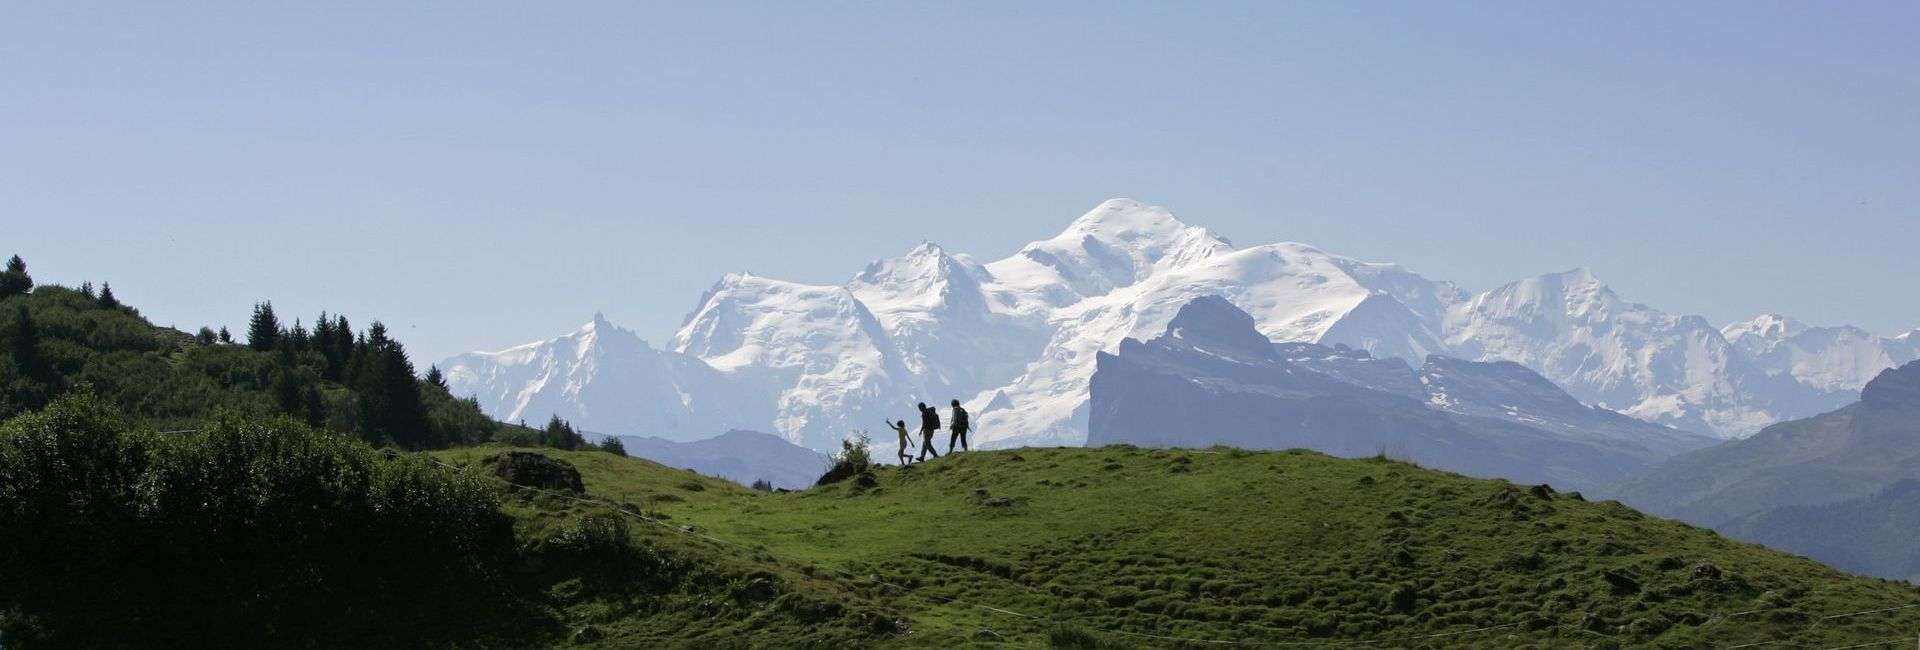 le massif du mont blanc - Savoie Mont Blanc / Dalmasso © JUIN16-MAI21-MD001